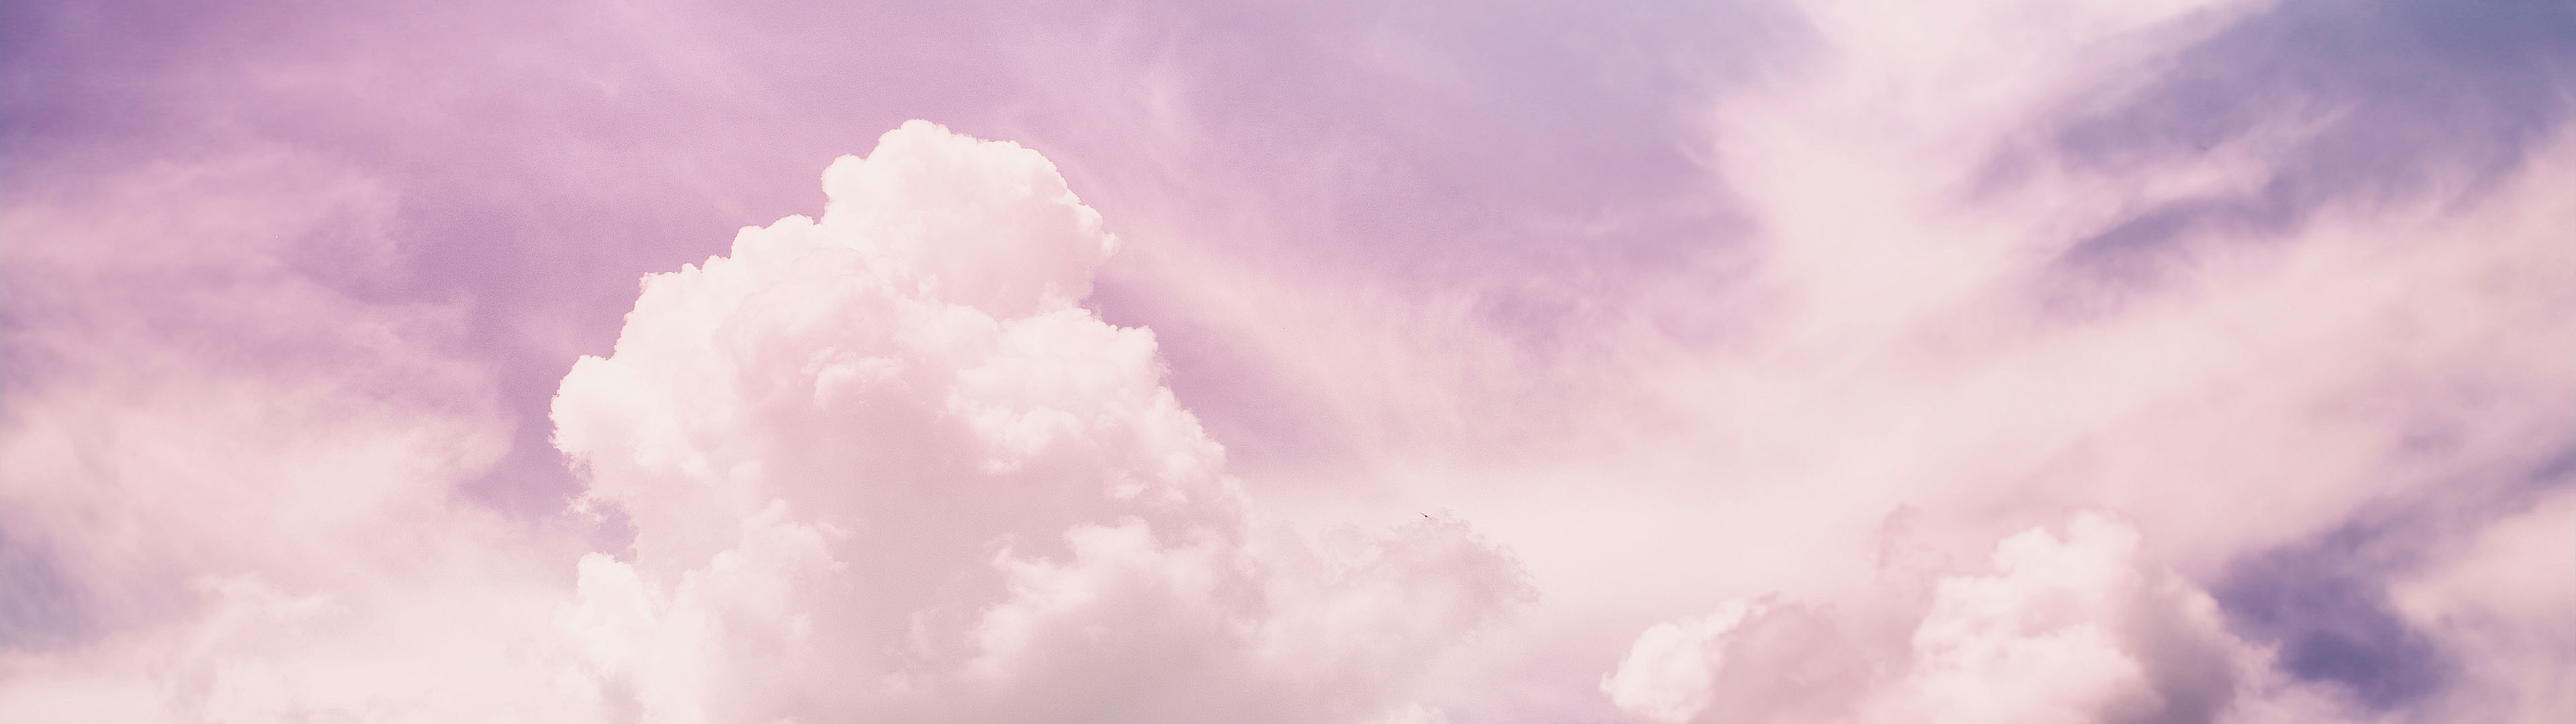 Hình nền màu tím nhạt kết hợp với đám mây tạo ra một cảnh vật rất tuyệt đẹp và ấn tượng. Đây sẽ là sự lựa chọn hoàn hảo cho những người yêu thích những hiện tượng thiên nhiên đầy màu sắc. Hãy nhấn vào ảnh để khám phá thêm chi tiết về hình nền này.